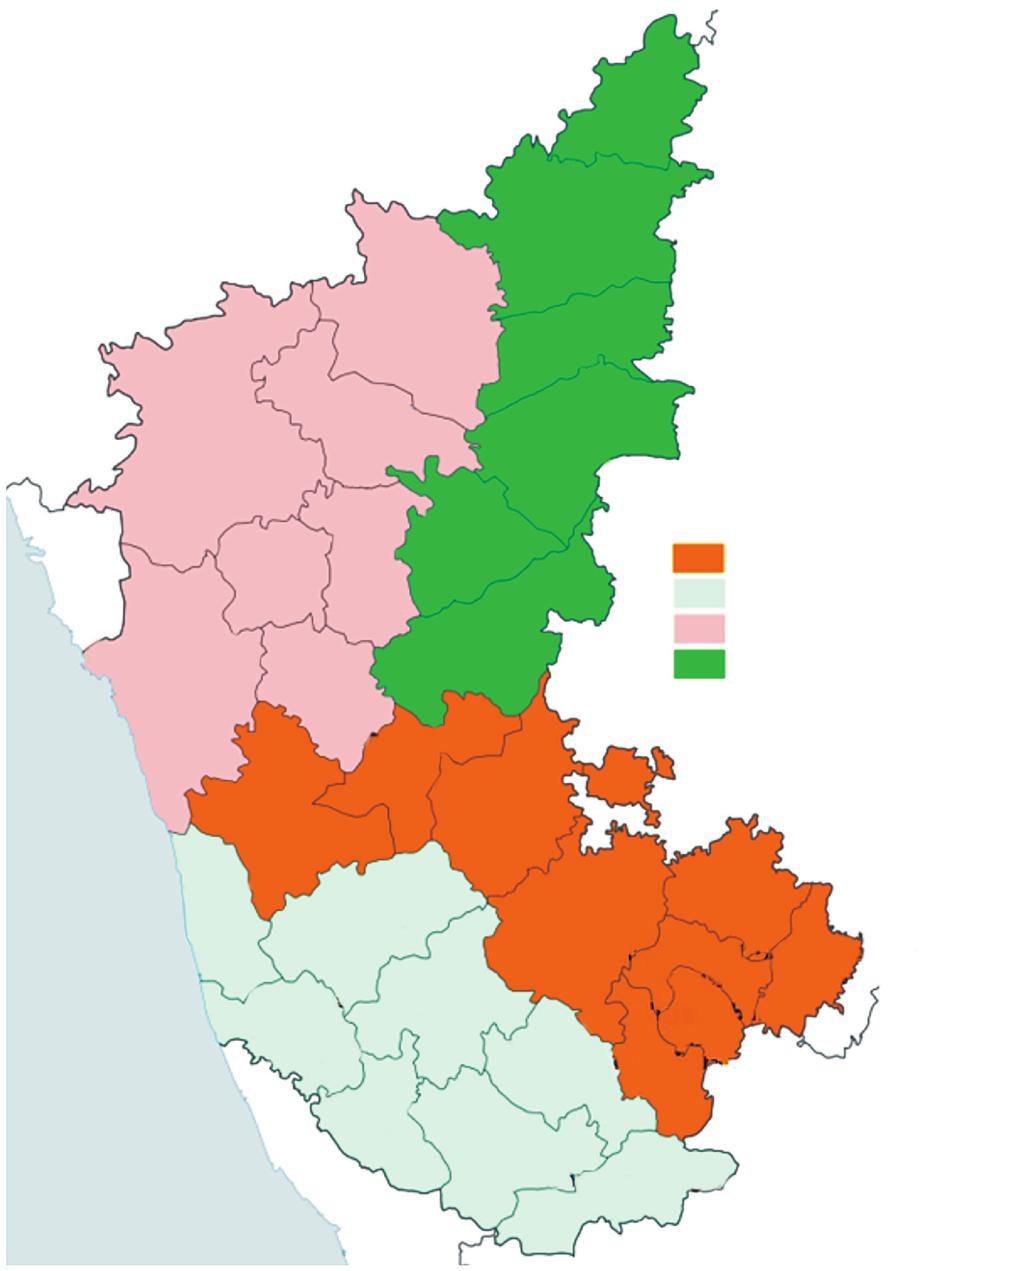 674 INDIAN J MED RES, may 2015 Bidar 13.85% Gulbarga 2.54% Belgaum 6.22% Bijapur 1.81% Bagalkot 5.14% Yadgir 12.51% Raichur 19.03% Gadag 5.79% Dharwad 4.74% Uttara Kannada Haveri 2.38% 8.